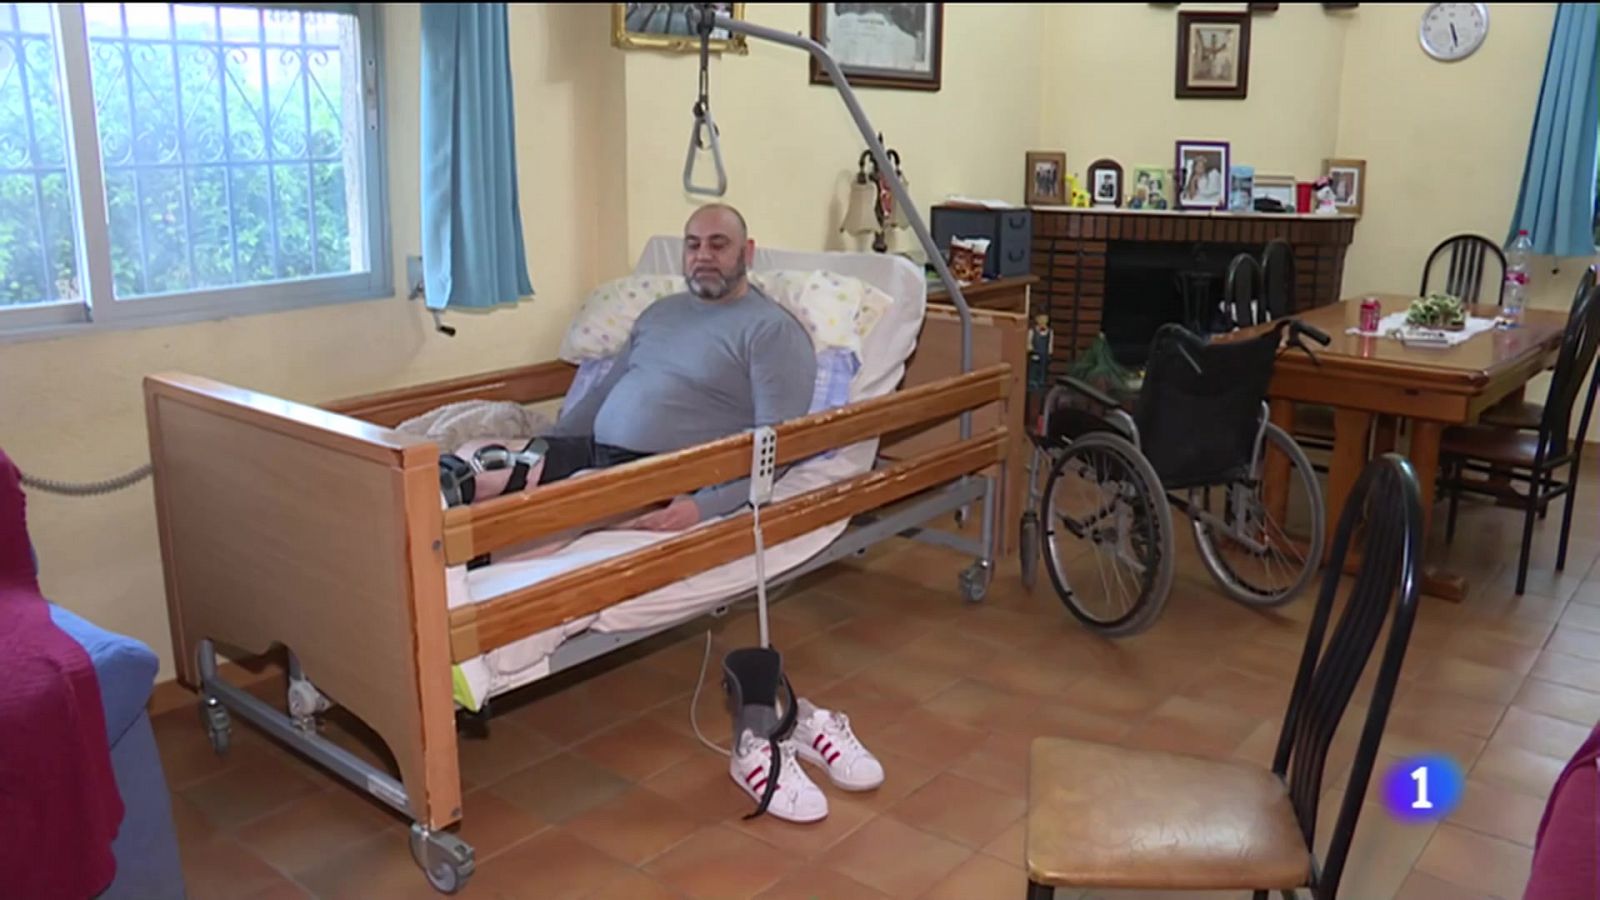 Vídeo sobre Francisco libra una doble batalla tras sufrir un accidente